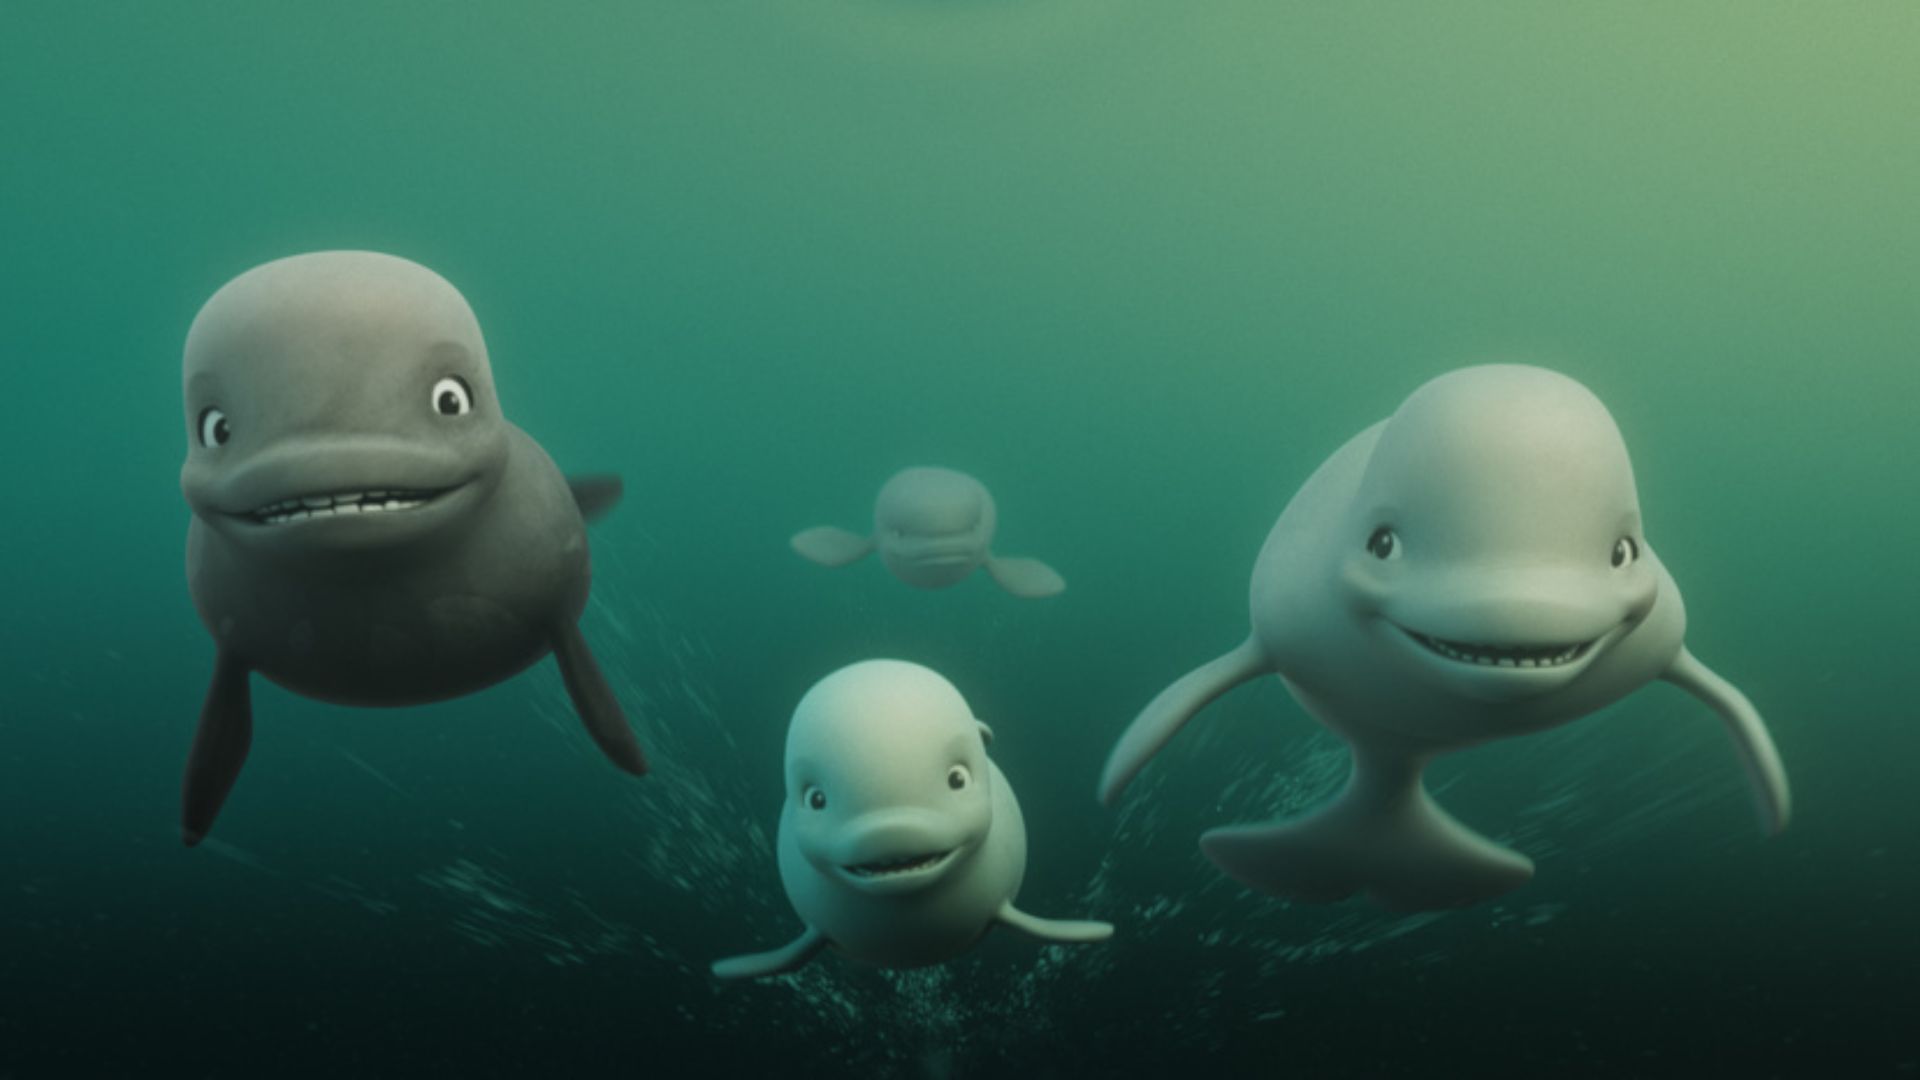 Kadr z bajki przedtsawiający rodzinę delfinów.